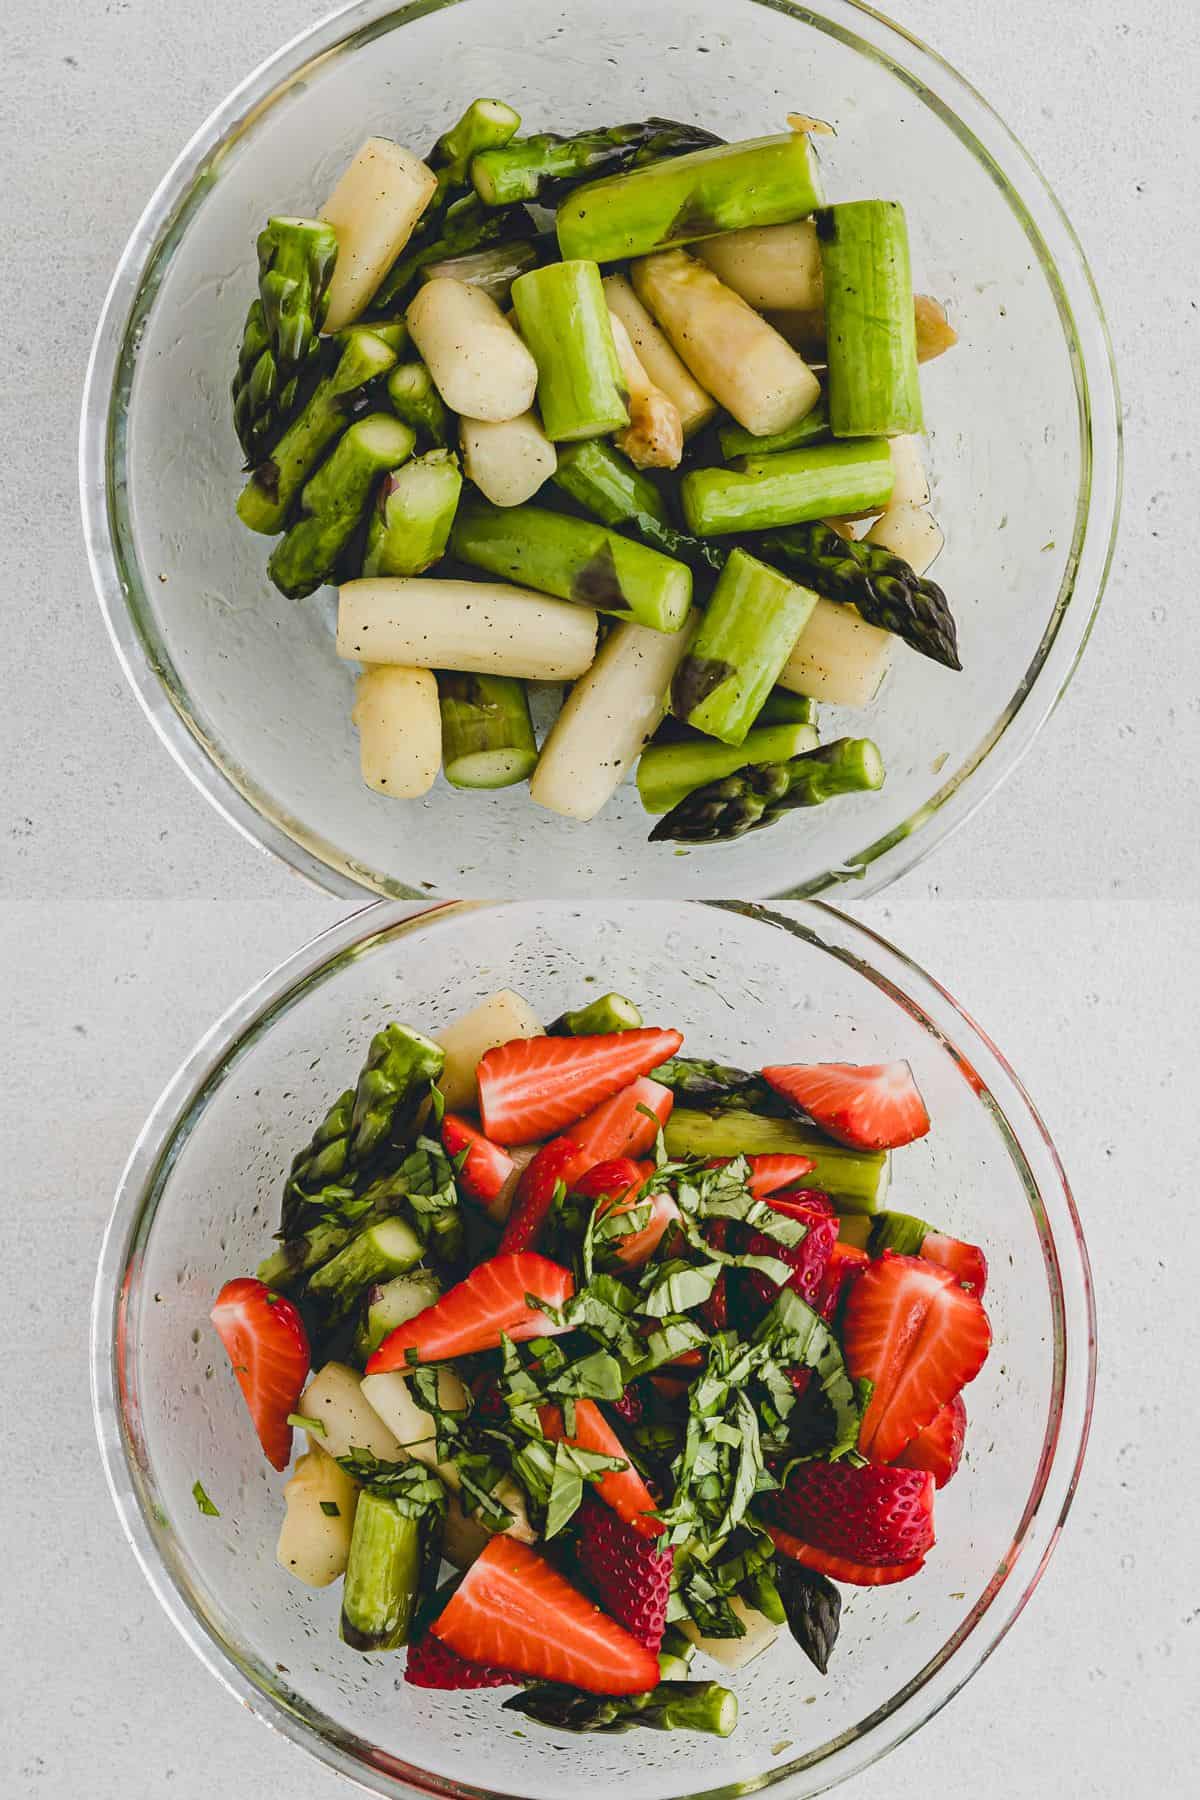 Strawberry Asparagus Salad Recipe Step 4-5